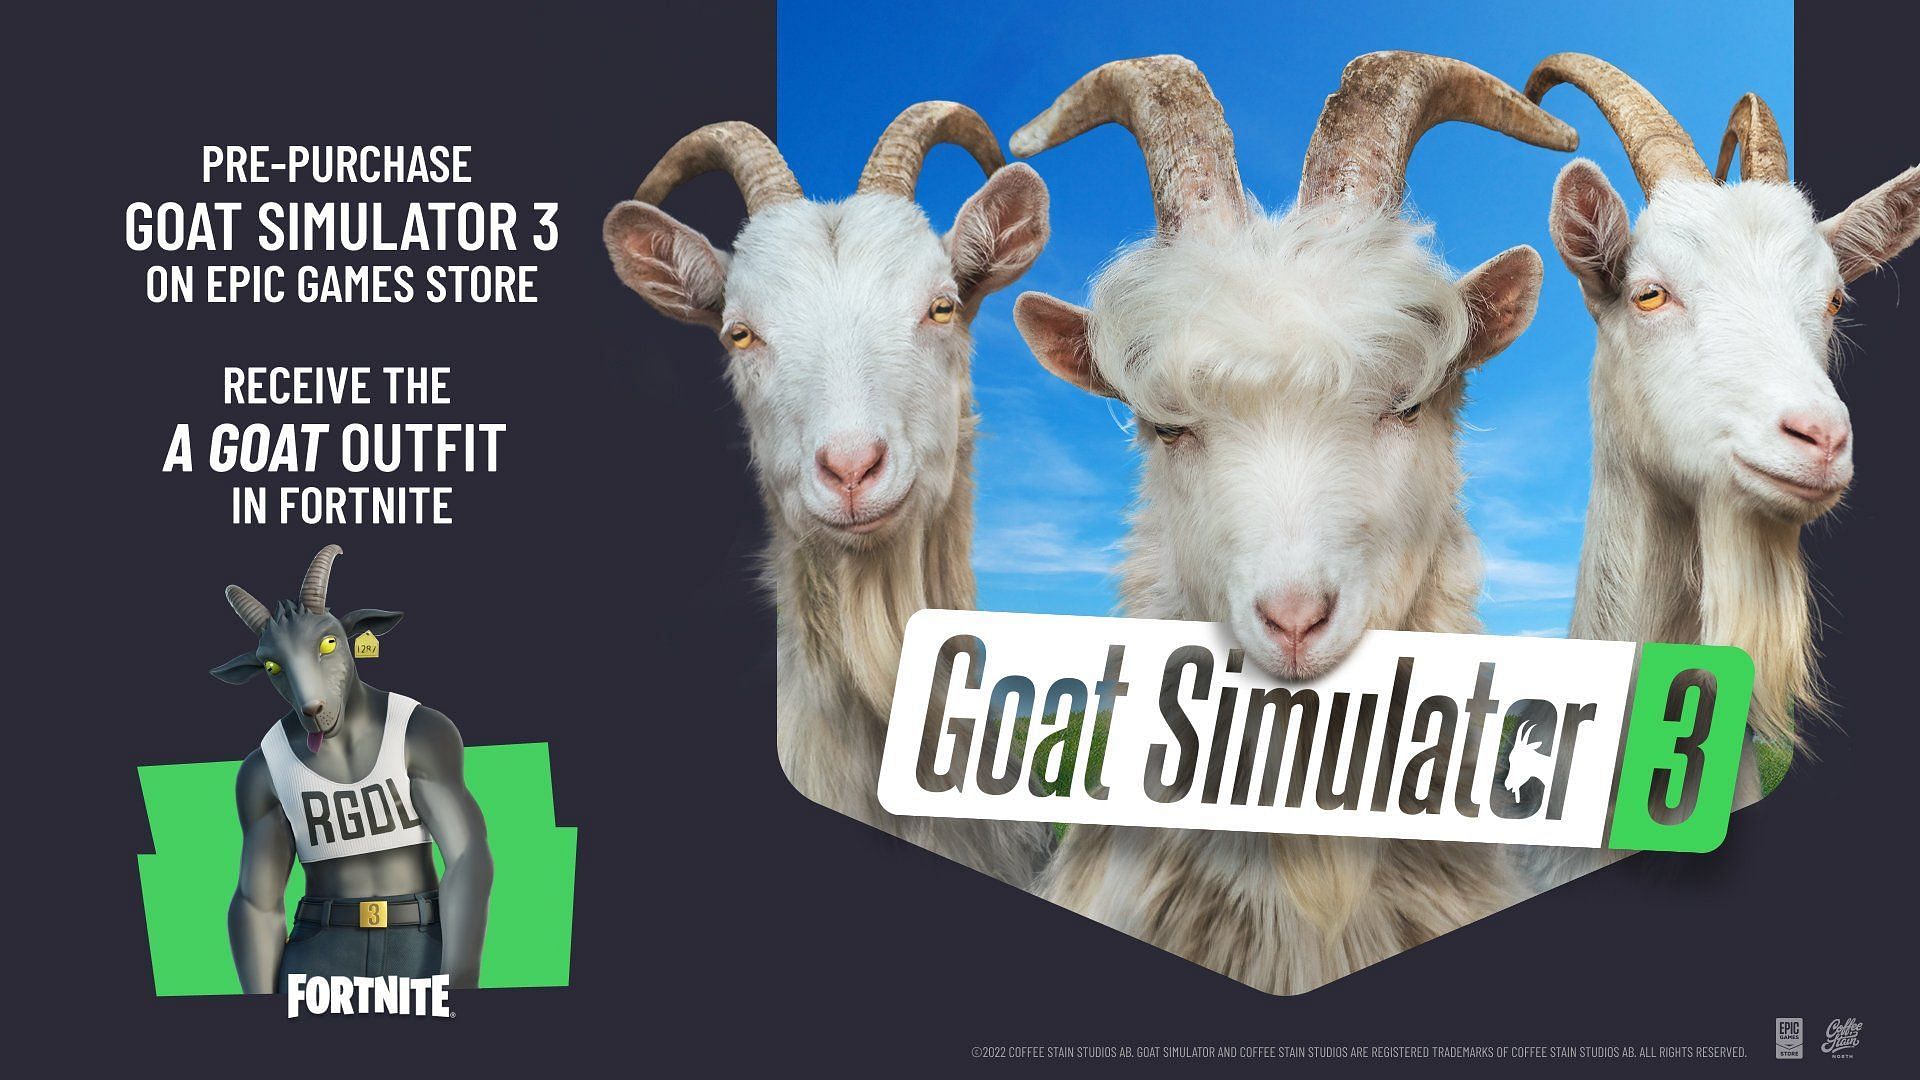 Der Neue Skin Kann Durch Den Kauf Von Goat Simulator 3 (Bild Über Epic Games) Bezogen Werden.